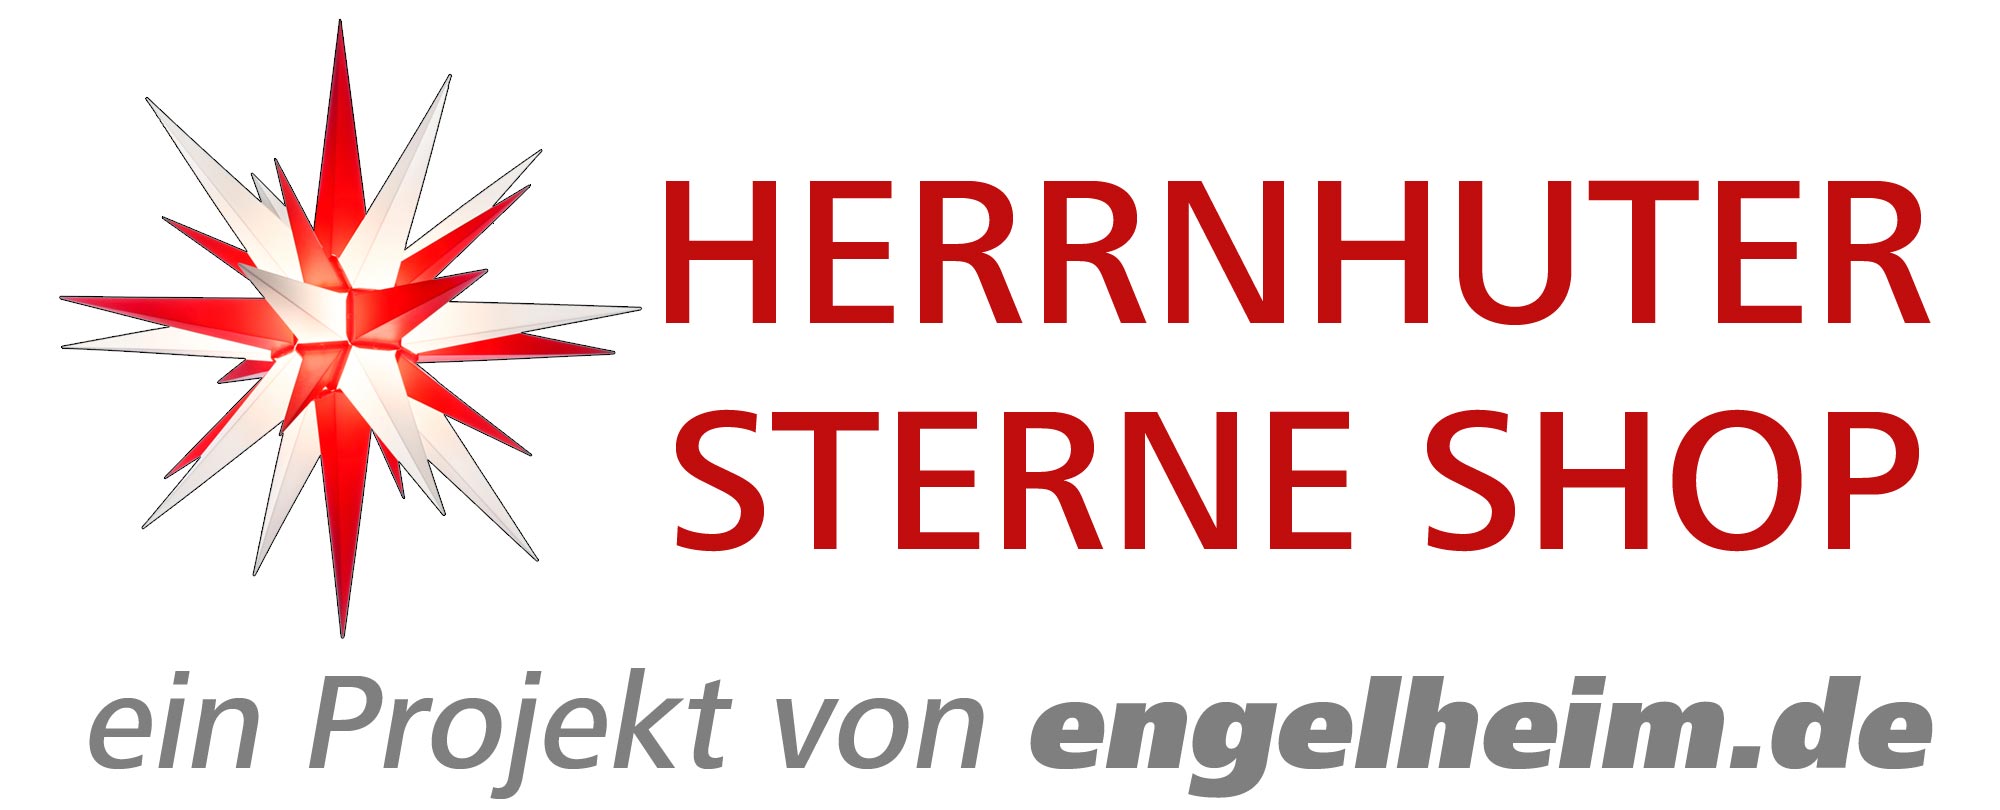 Kabel Und Netzgerate Fur Herrnhuter Sterne Online Shop